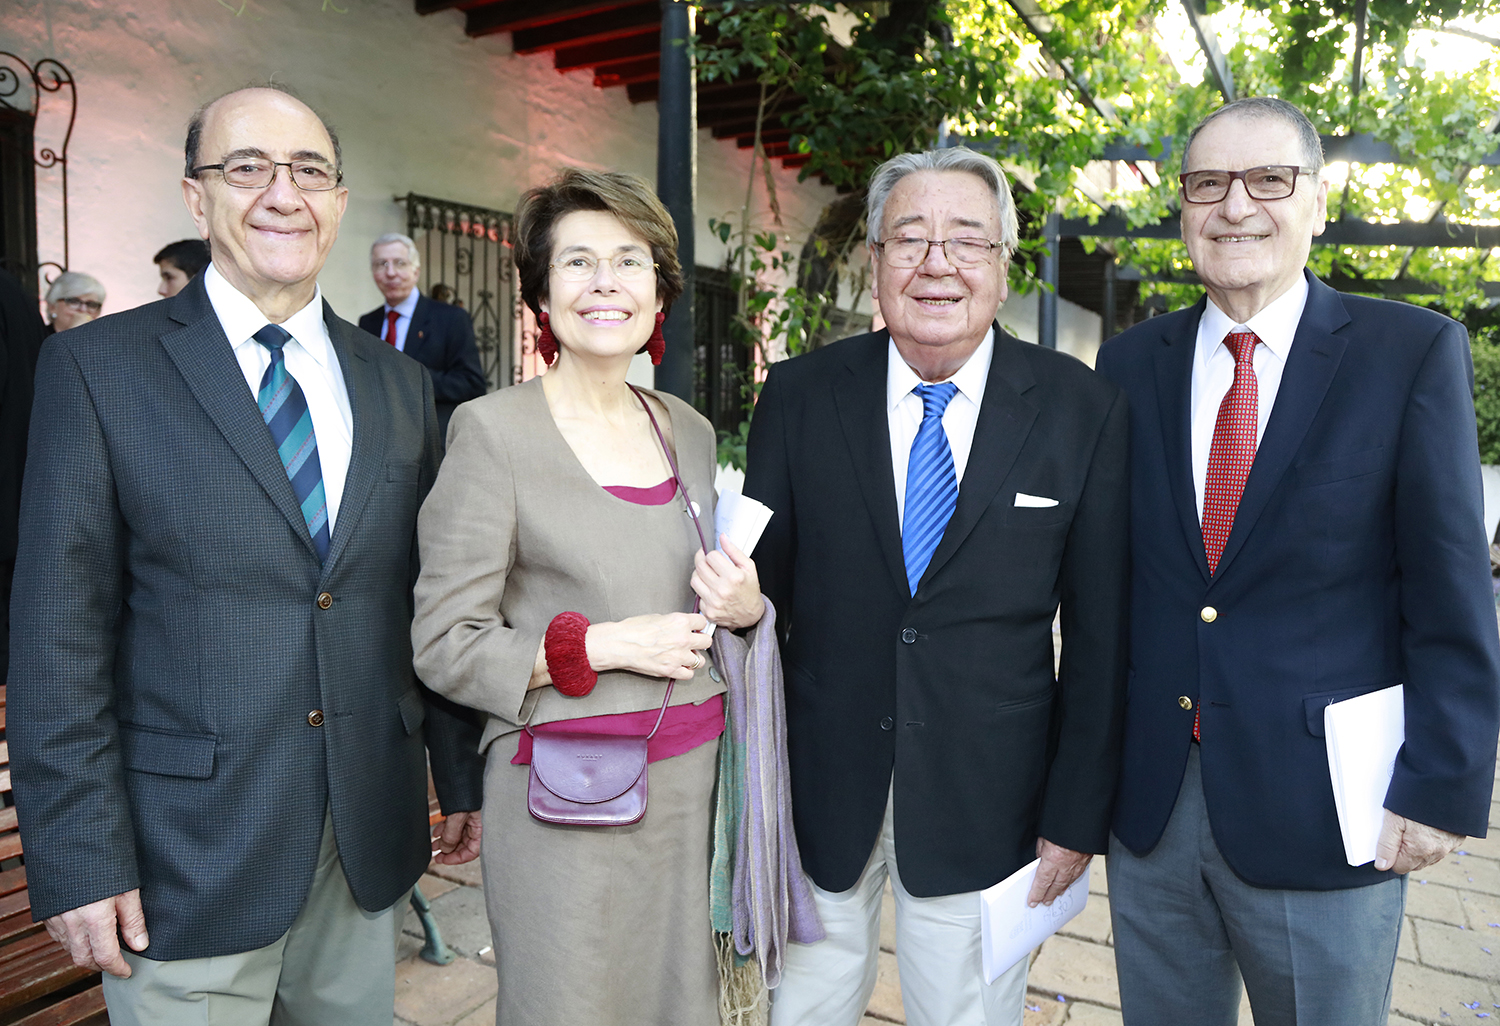 Doctor Jorge Babul de la U.de Chile; Rosa Florensa, junto al Dr. Luis Burzio, investigador de la Facultad de Ciencias Biológicas UNAB y el Dr. Manuel Krauskopf, miembro de la junta directiva de la misma universidad.